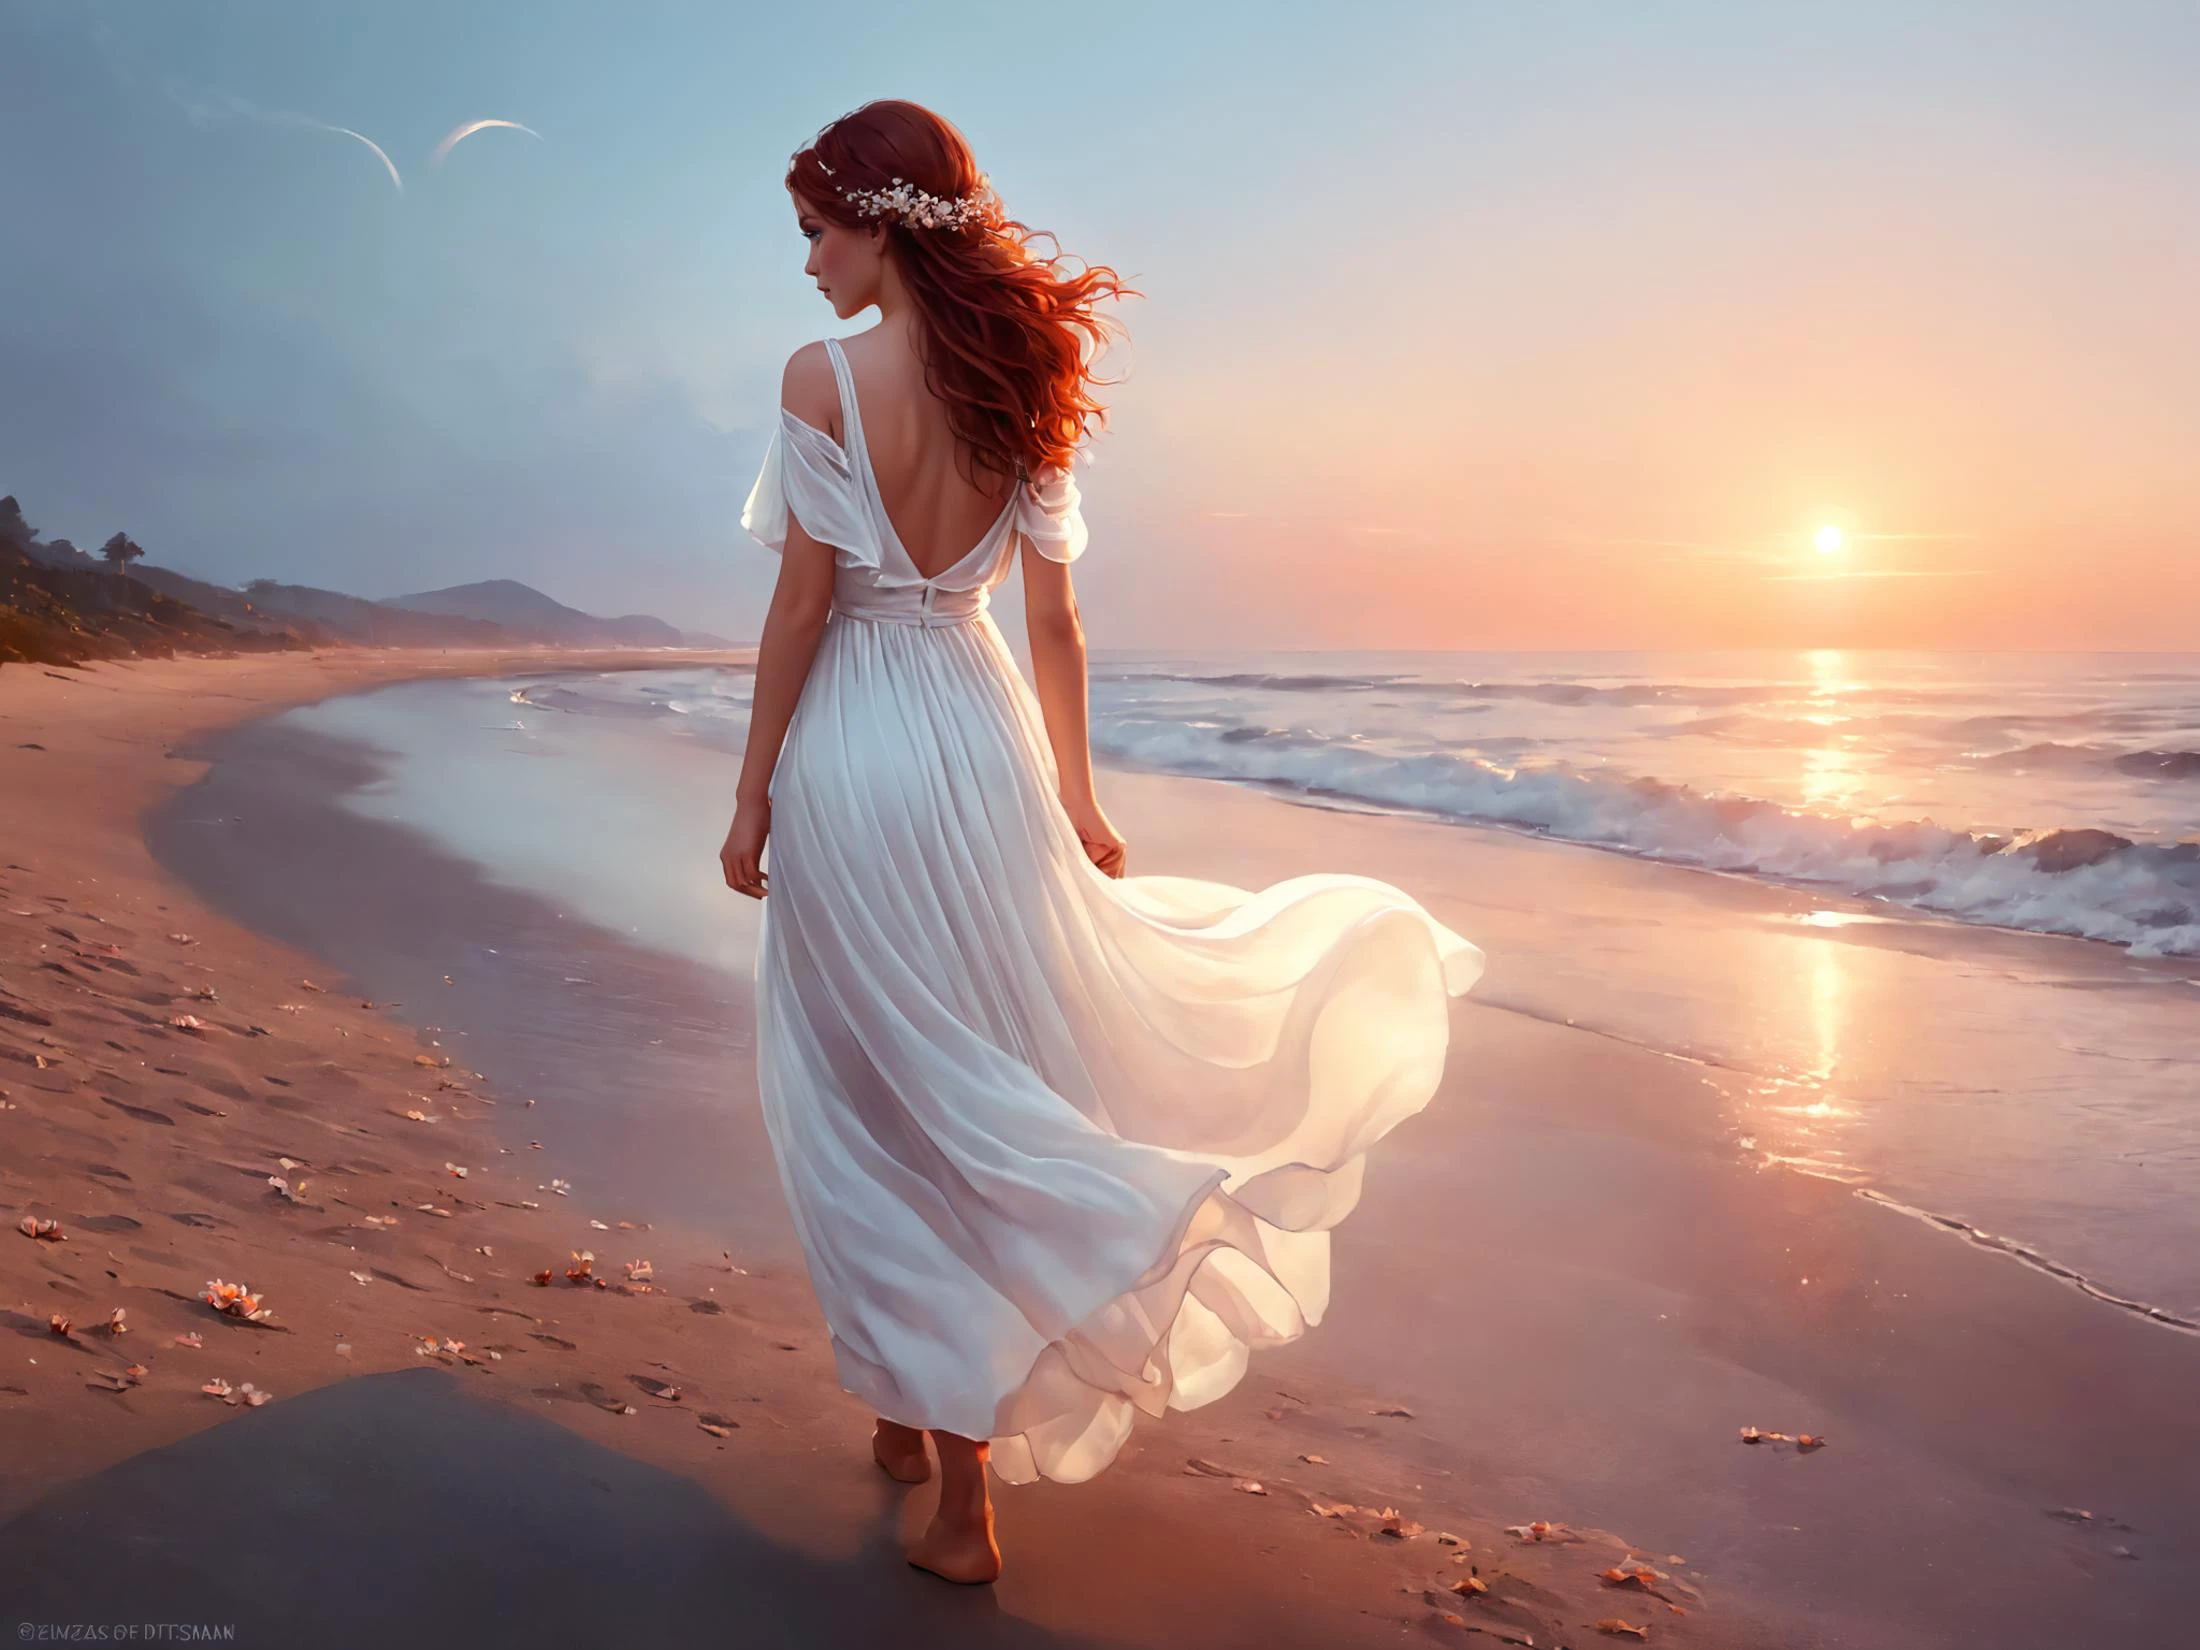 一位女性的幻想数字绘画, 空灵之美, 渴望地望着天空, 详细的悲伤的眼睛, 穿过海滩, 赤脚, 穿着宽松的白色透明连衣裙，随风飘扬, 她头发上的花, 橙色 红色 粉红色 天空, 后视图, 梦幻氛围, 沐浴在黄昏的绯红光芒中, 安娜·迪特曼 格雷格·鲁特科斯基